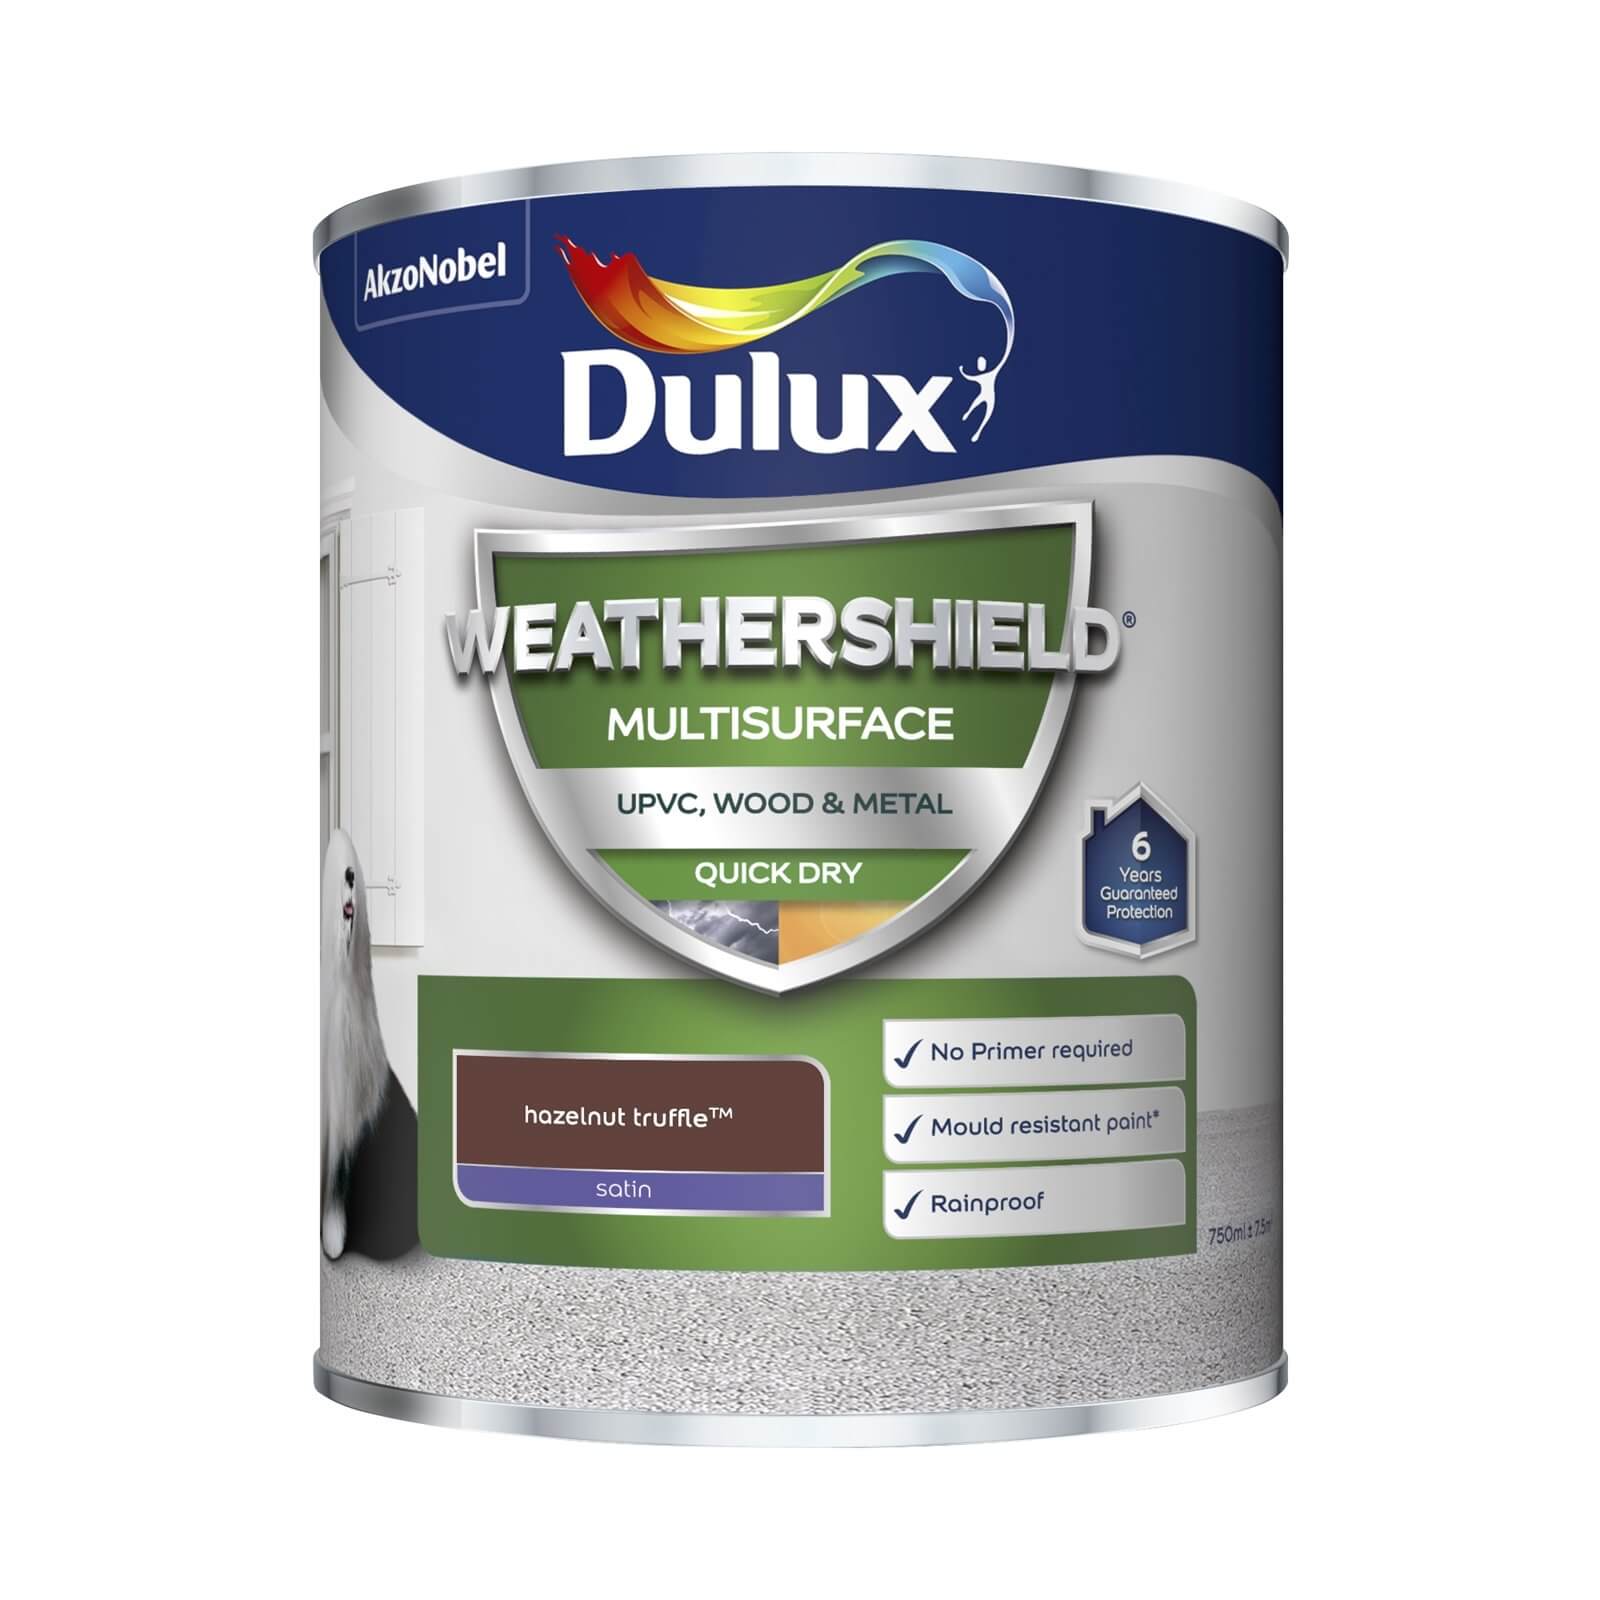 Dulux Weathershield Multi Surface Paint Hazelnut Truffle - 750ml